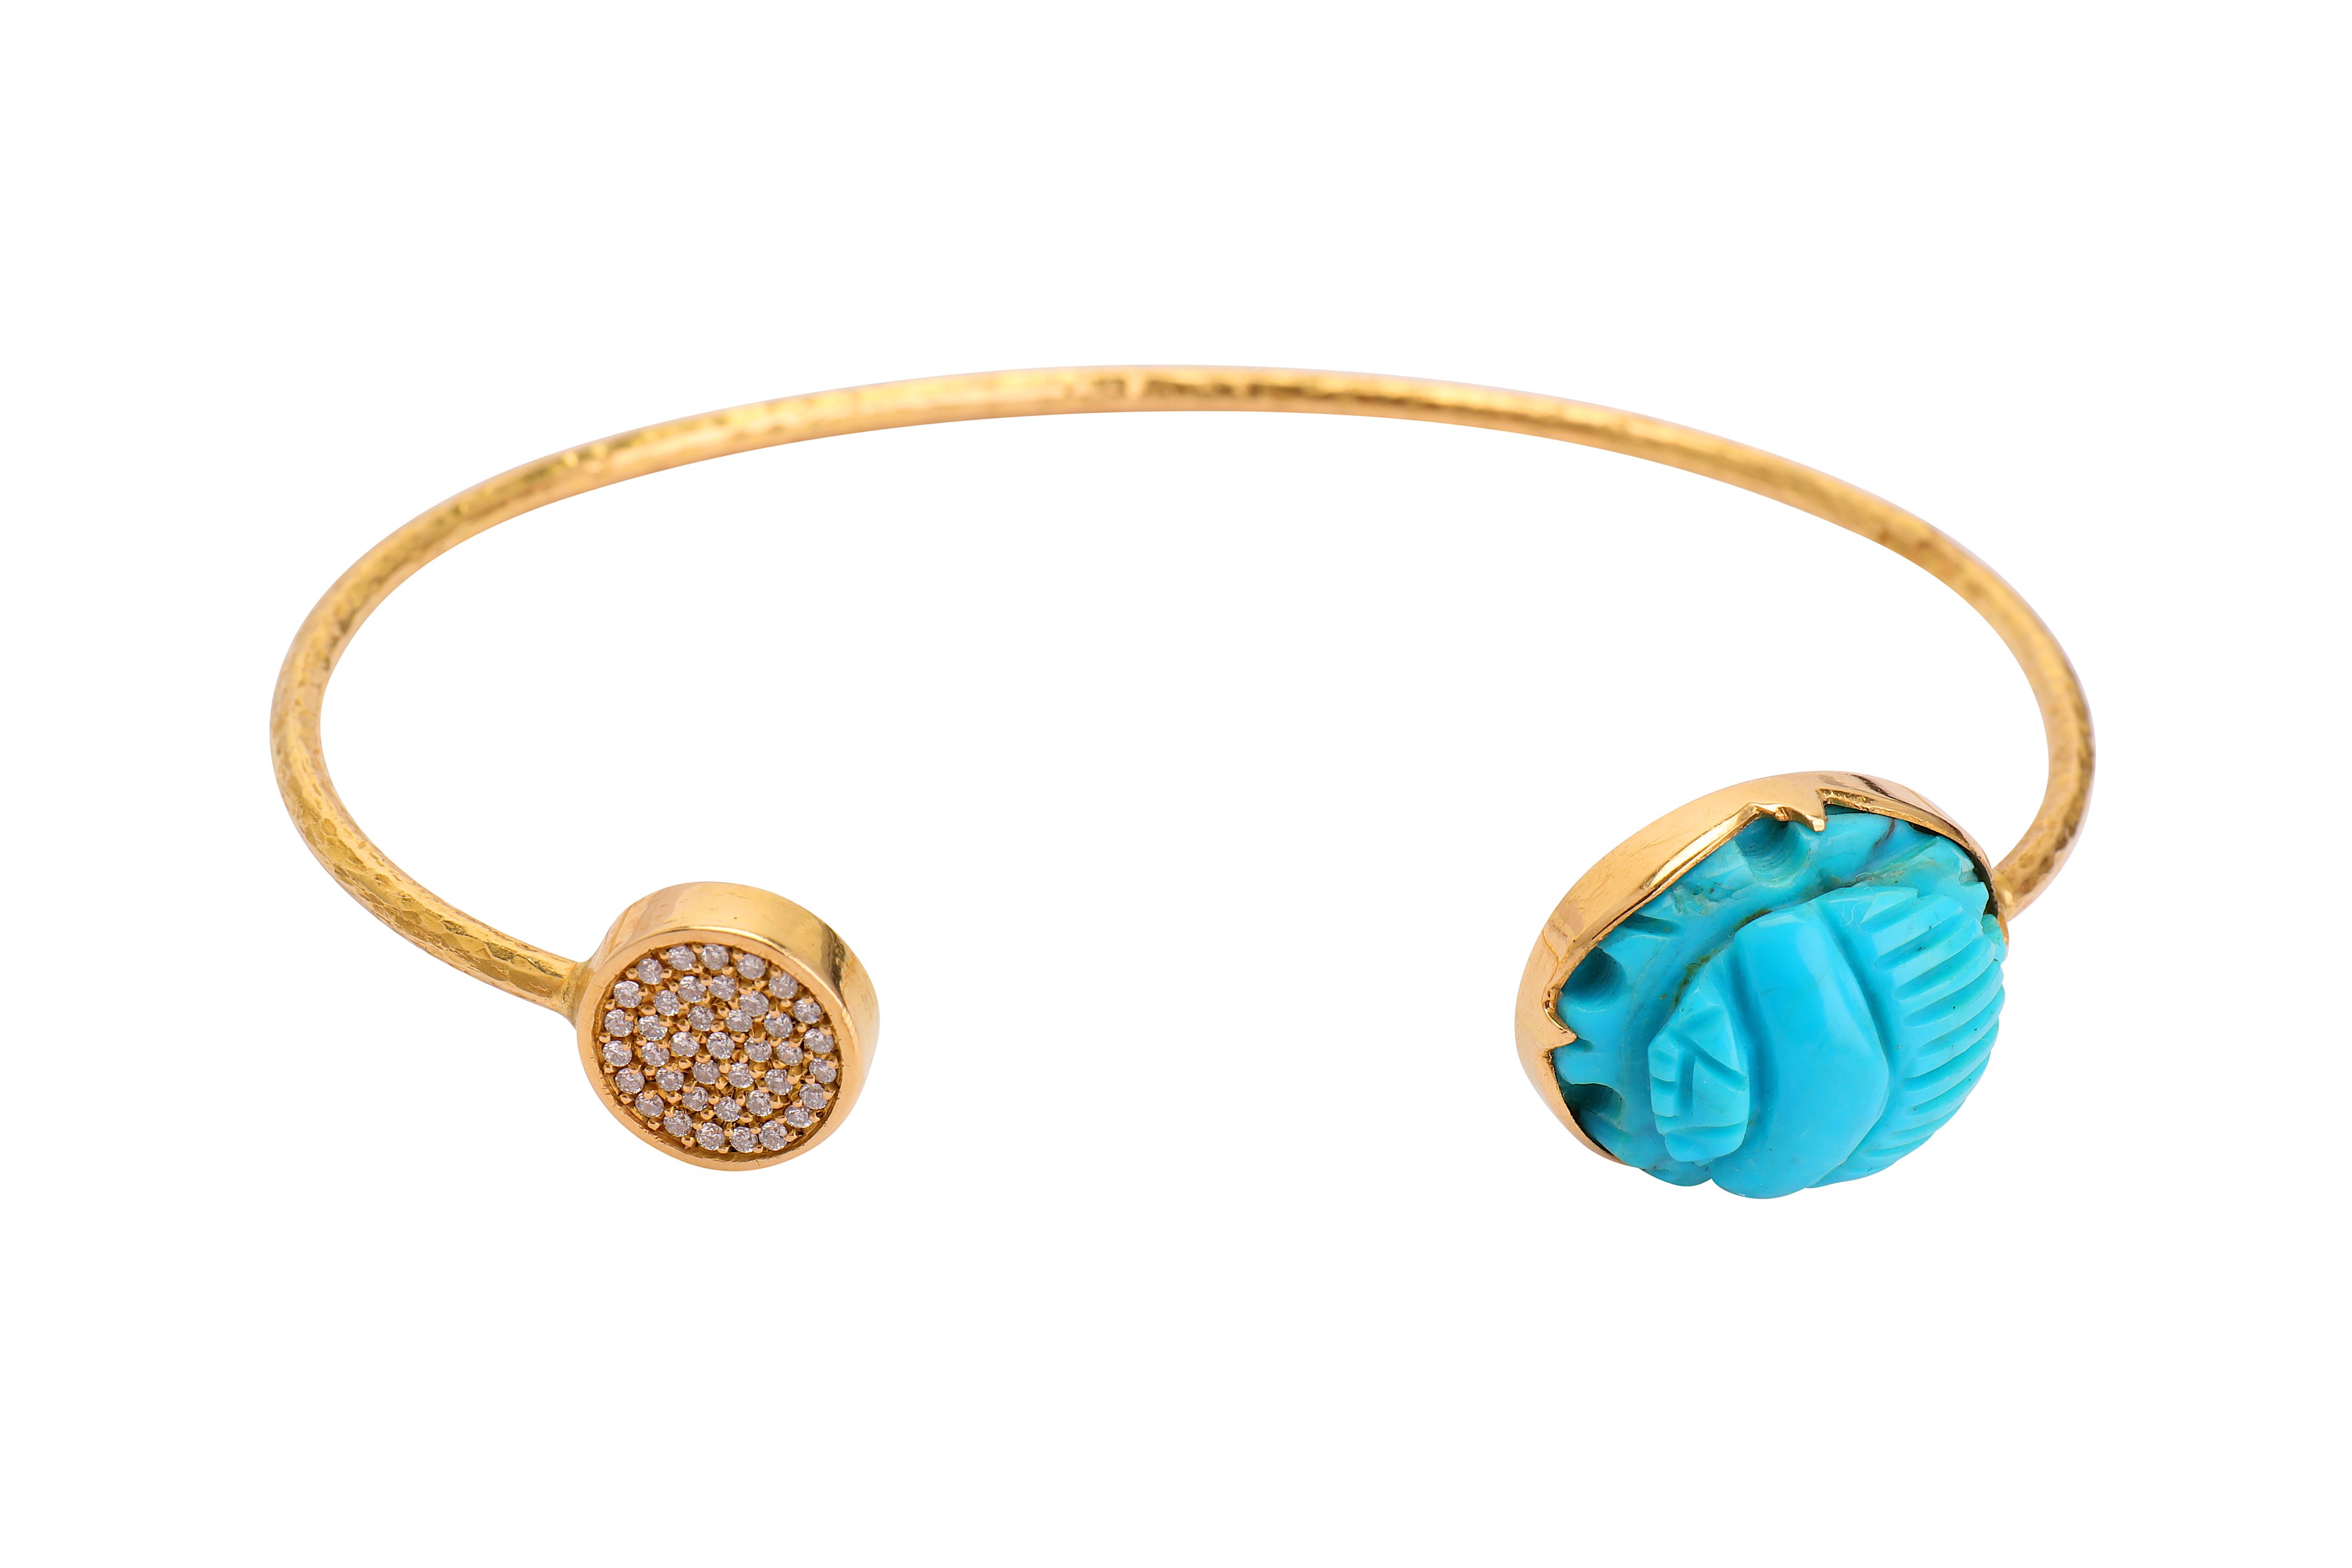 A turquoise scarab and diamond bangle